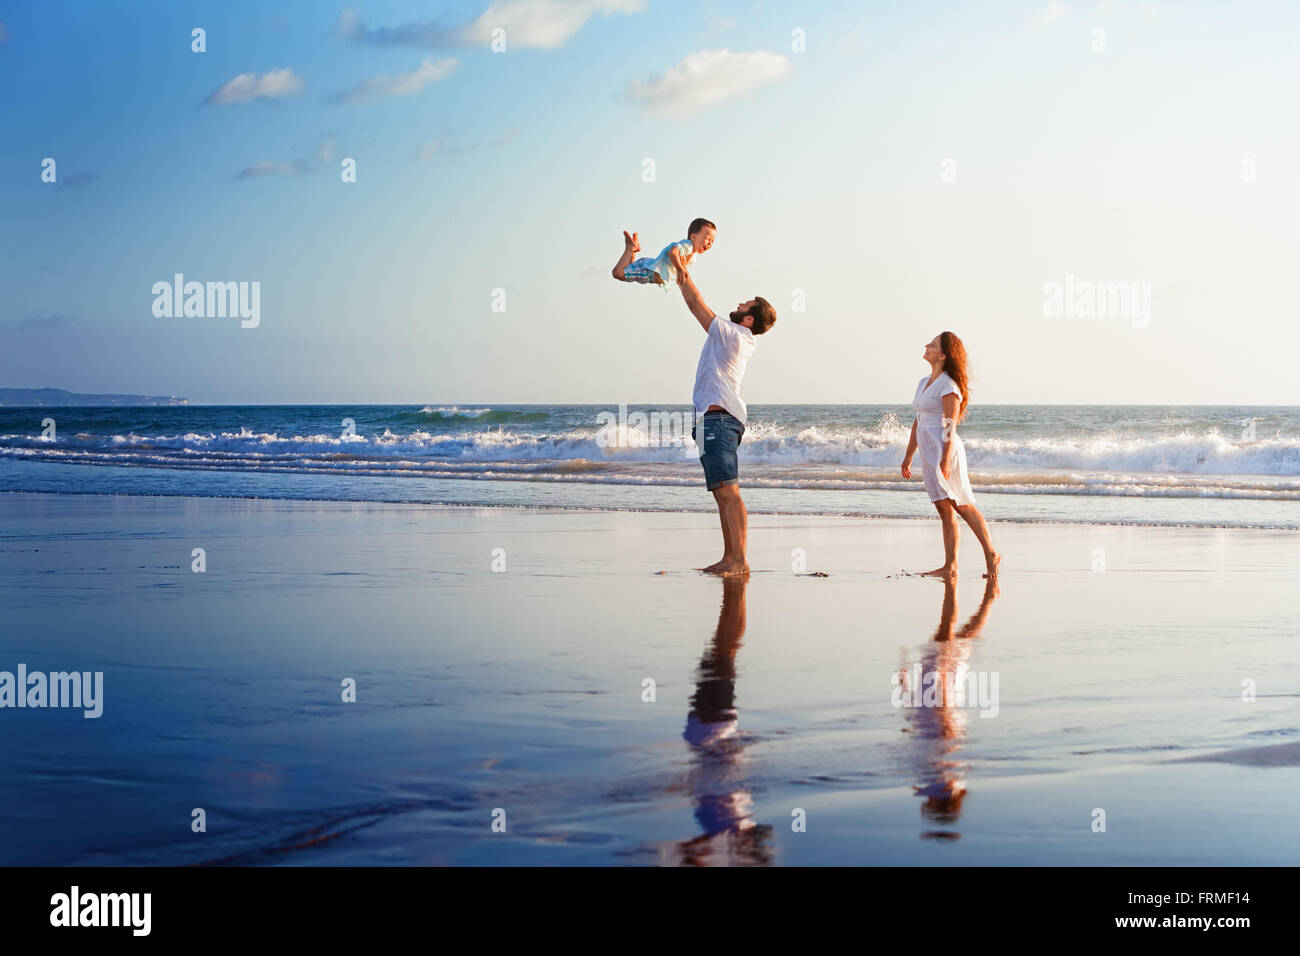 Familia Feliz, padre, madre, hijo camine con diversión a lo largo del borde del mar sunset surf en la playa de arena negra. Foto de stock